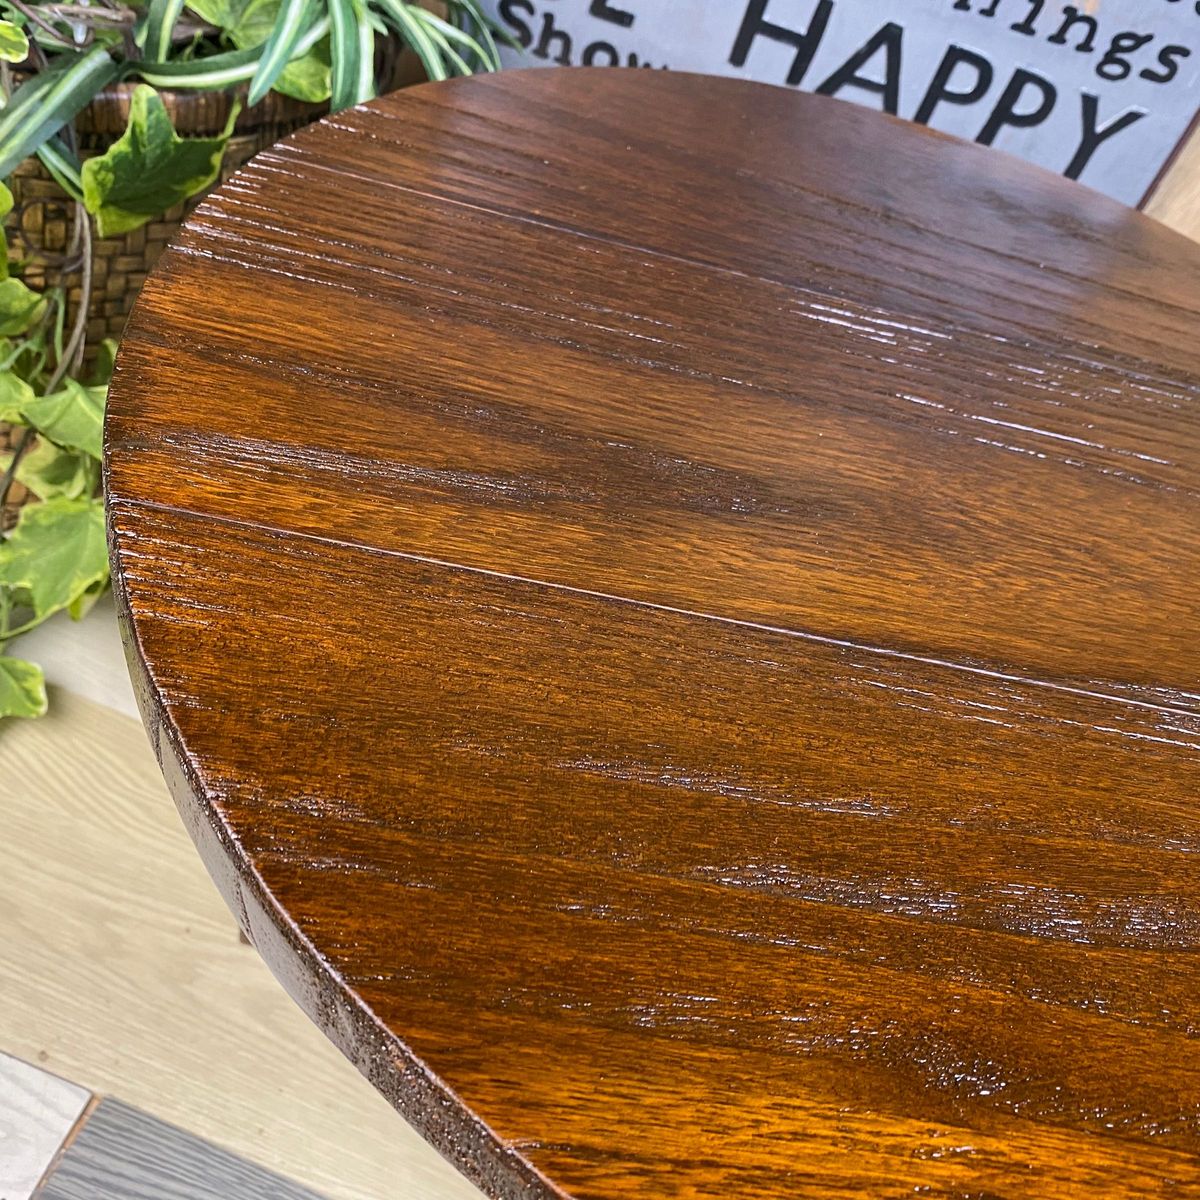 アジアンエスニック木製原木無垢材ちゃぶ台S 折りたたみ式ティーテーブル 木製花台 置き台 座卓